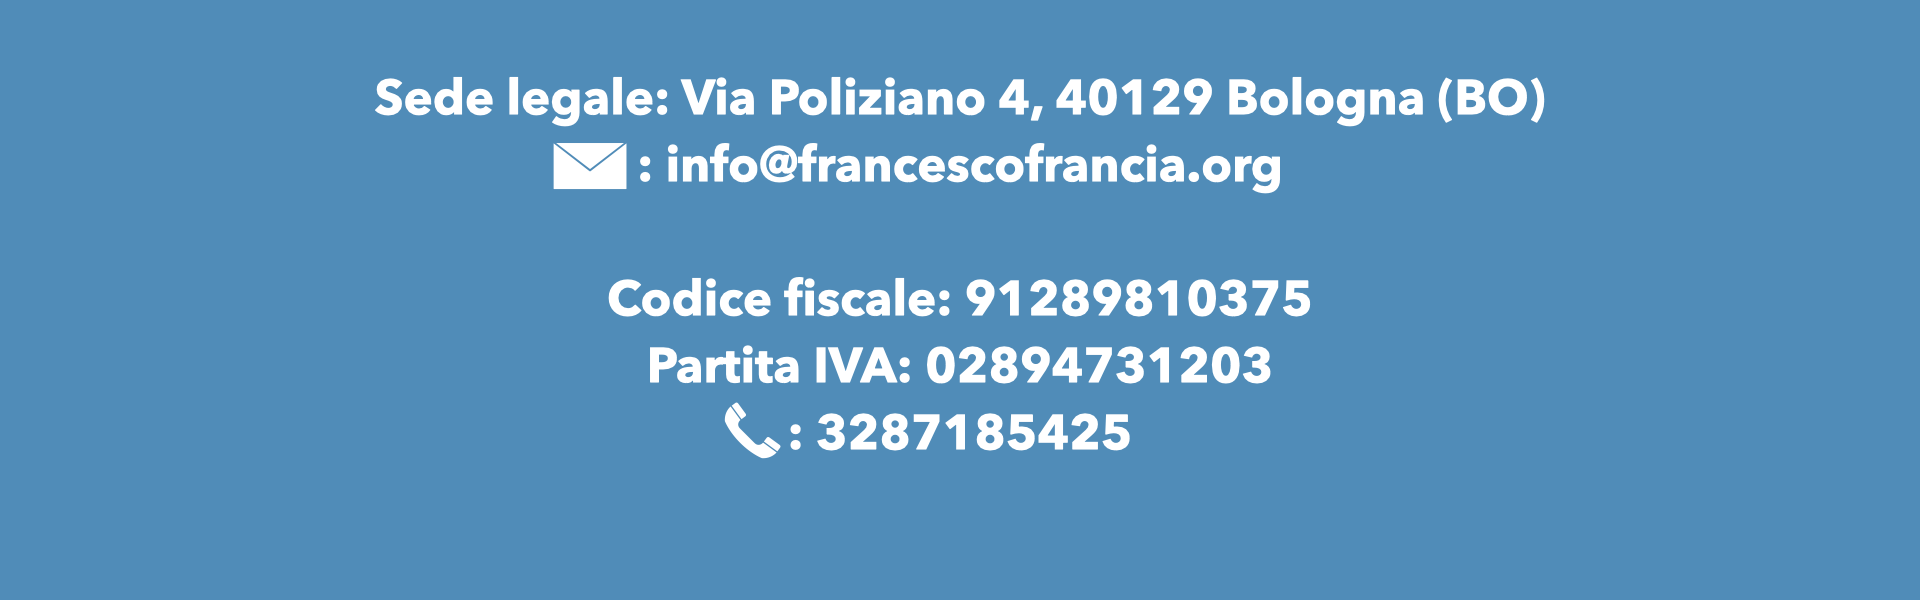 francescofrancia.org